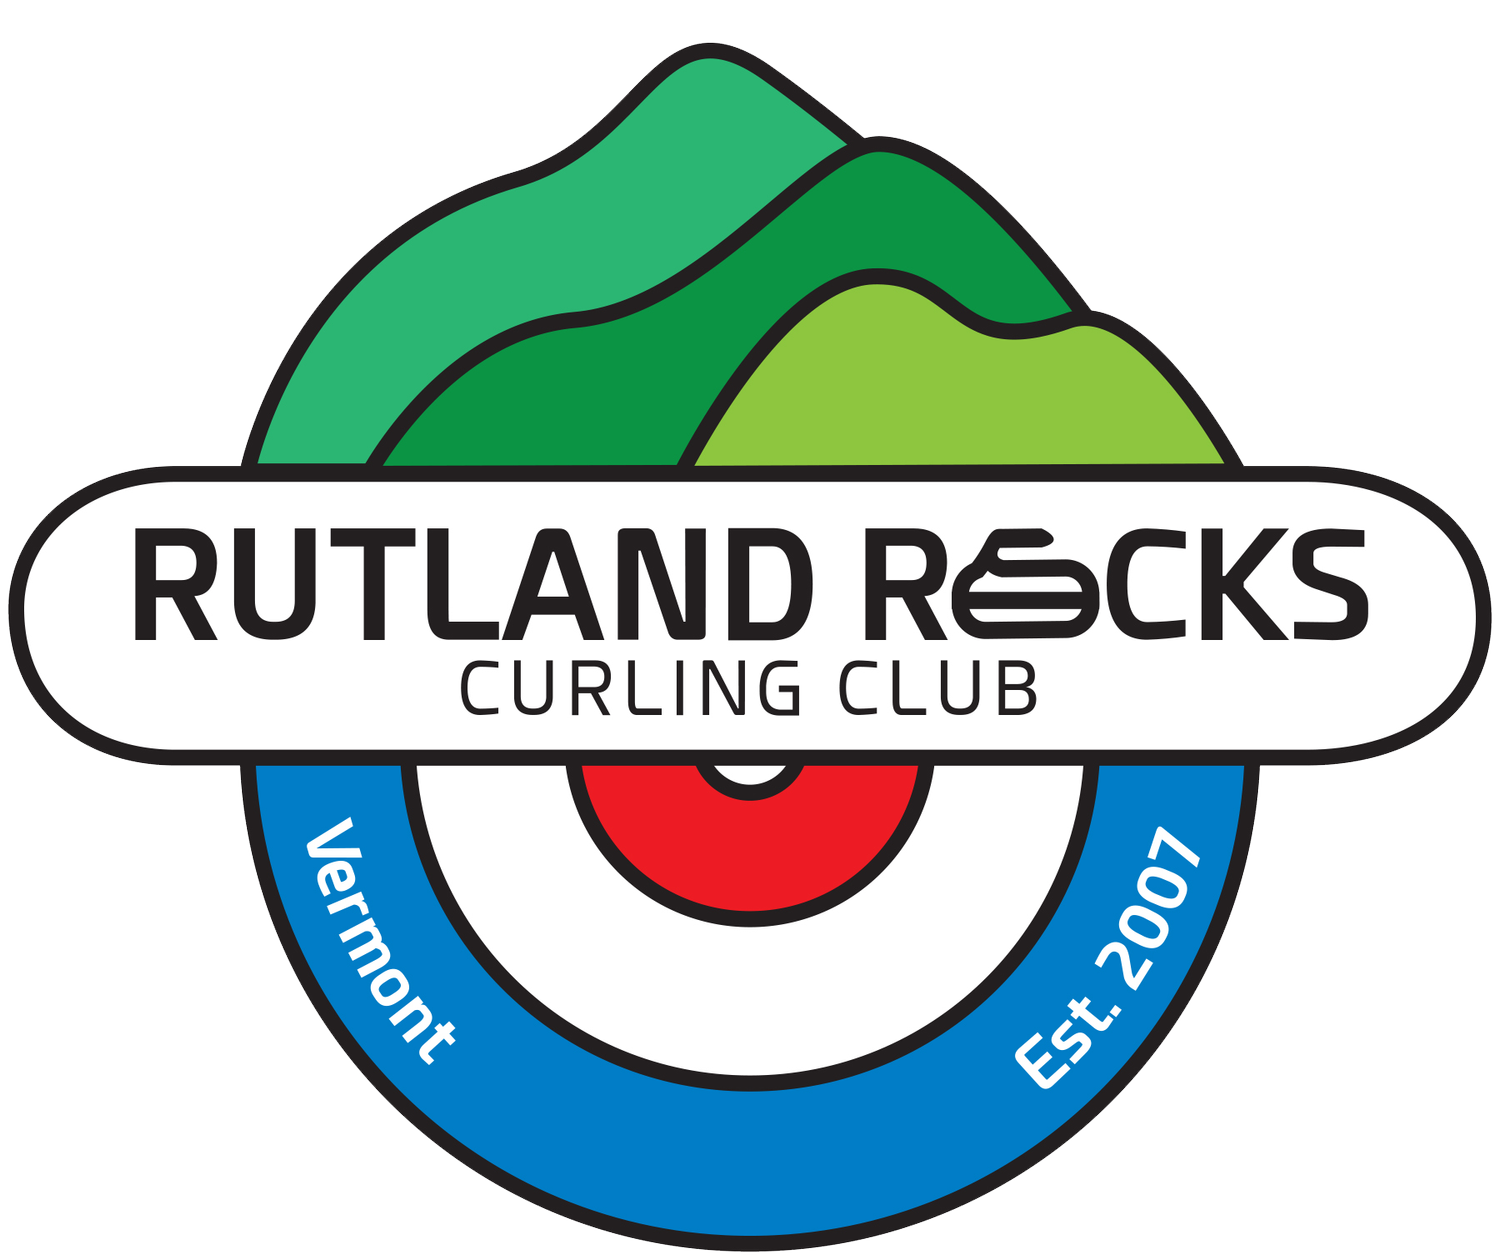 Rutland Rocks Curling Club